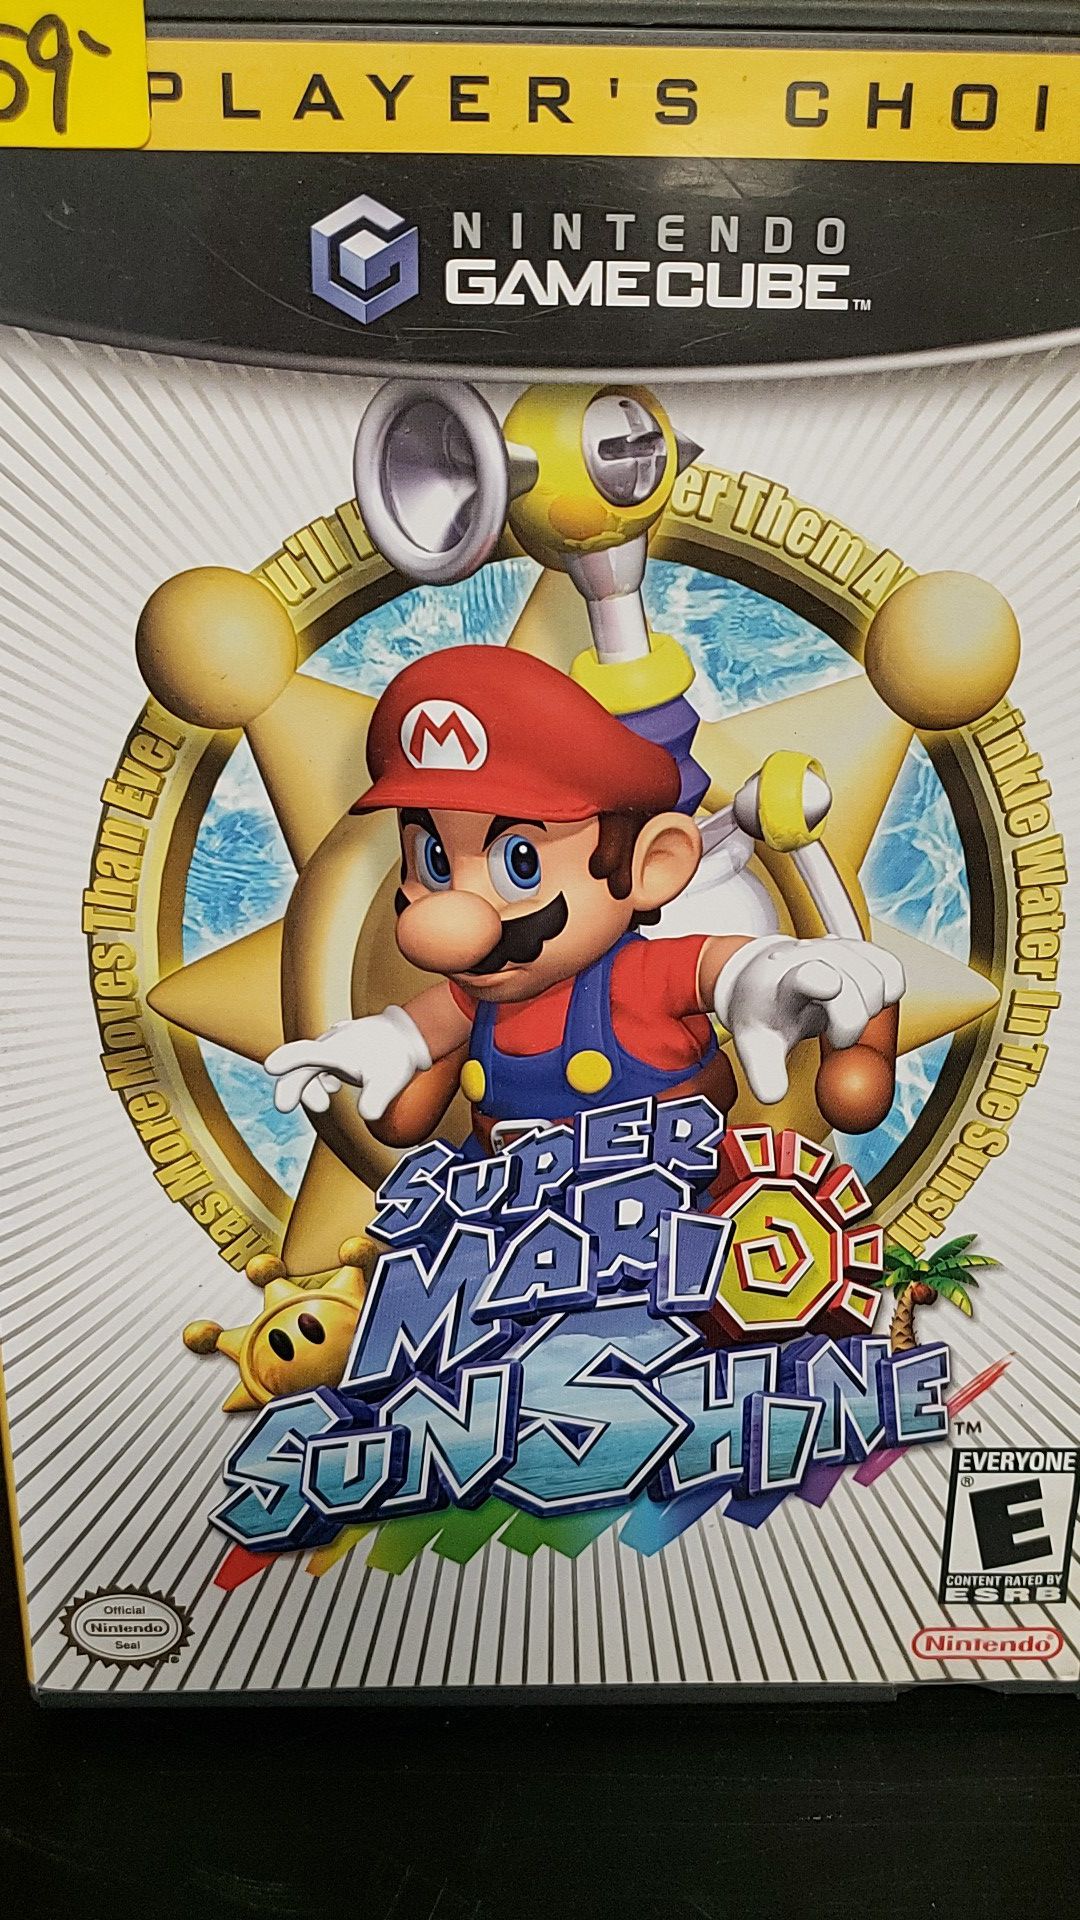 Nintendo Gamecube Game: Super Mario Sunshine